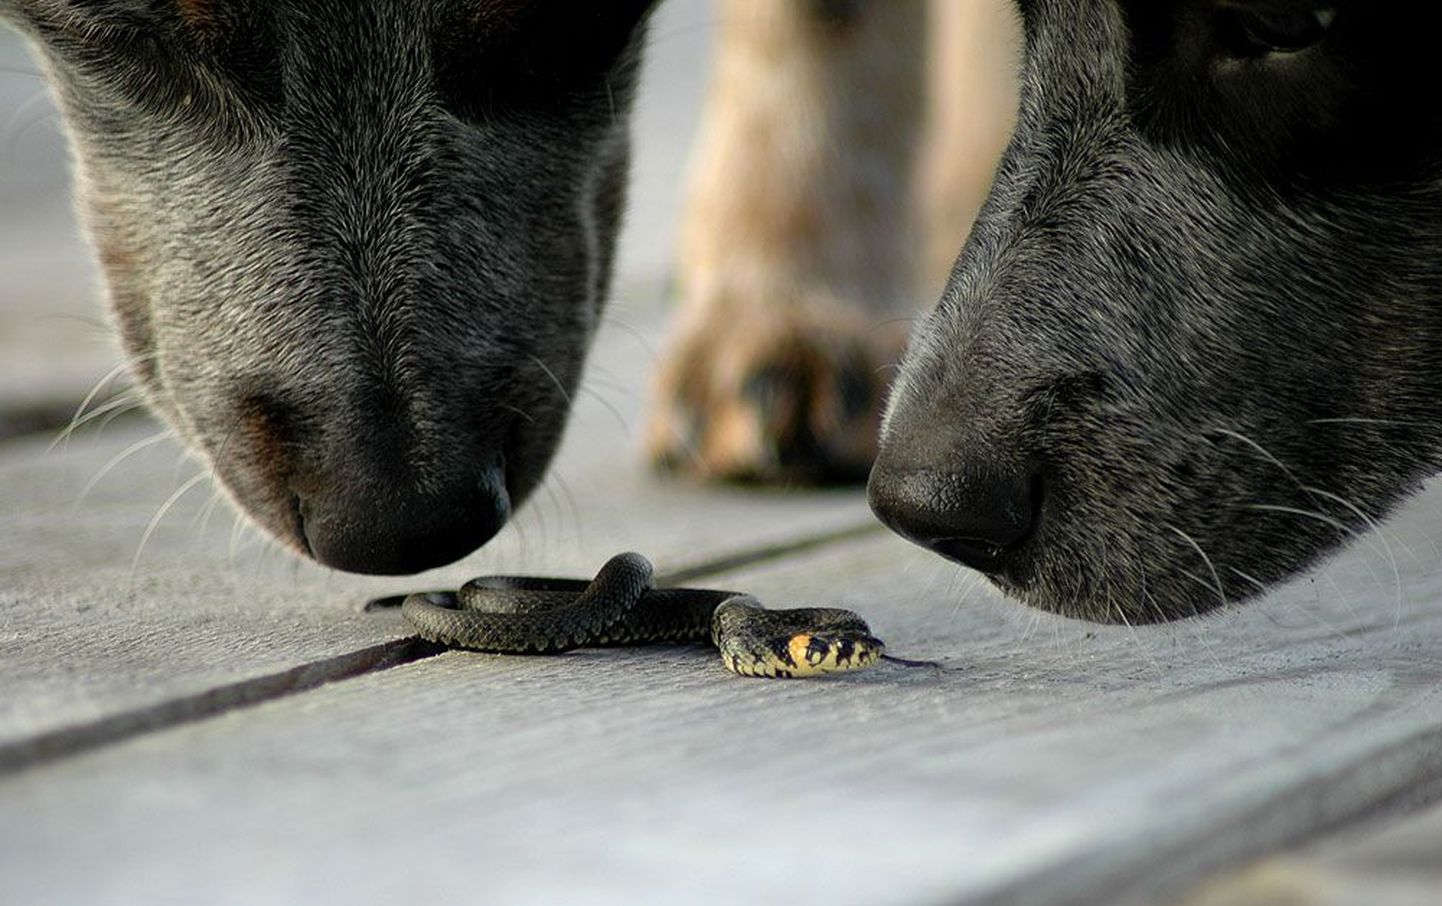 Vaskuss ja nastik koerale ohtlikud pole, küll aga on ohtlik rästiku salvamine. Pildil Austraalia karjakoerad Agnes ja Dusha nastikupoega nuusutamas.